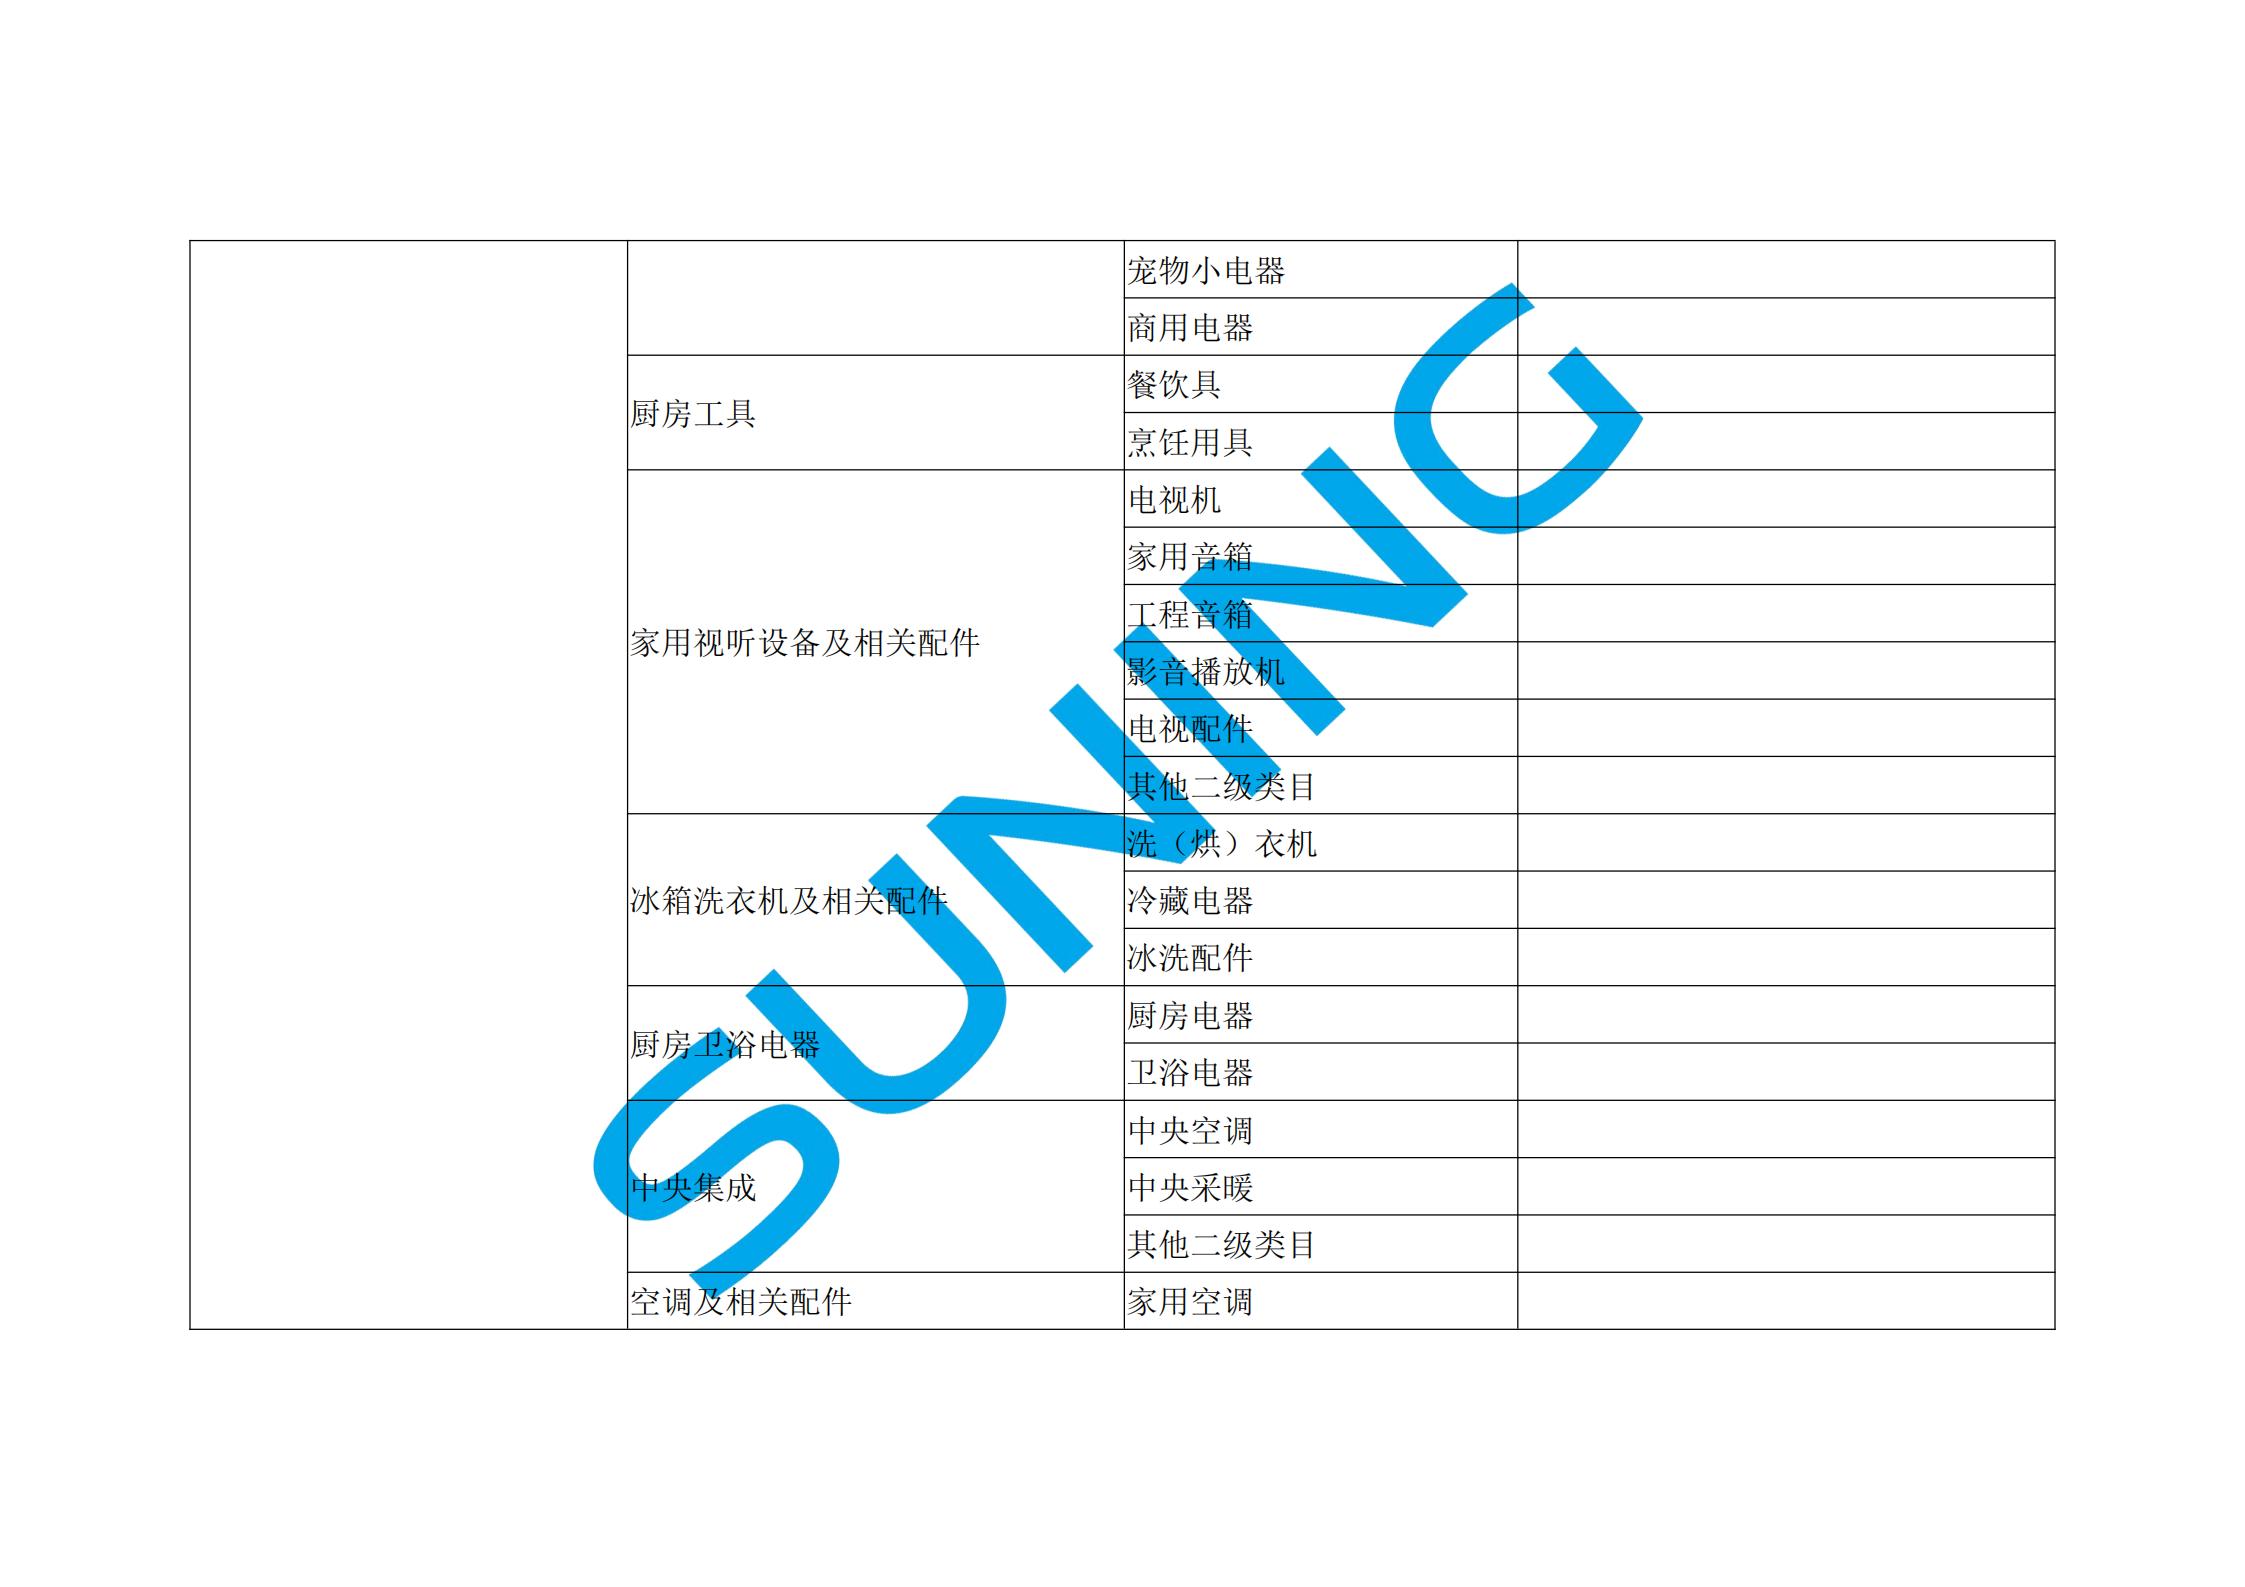 苏宁易购招商类目一览表_09.jpg